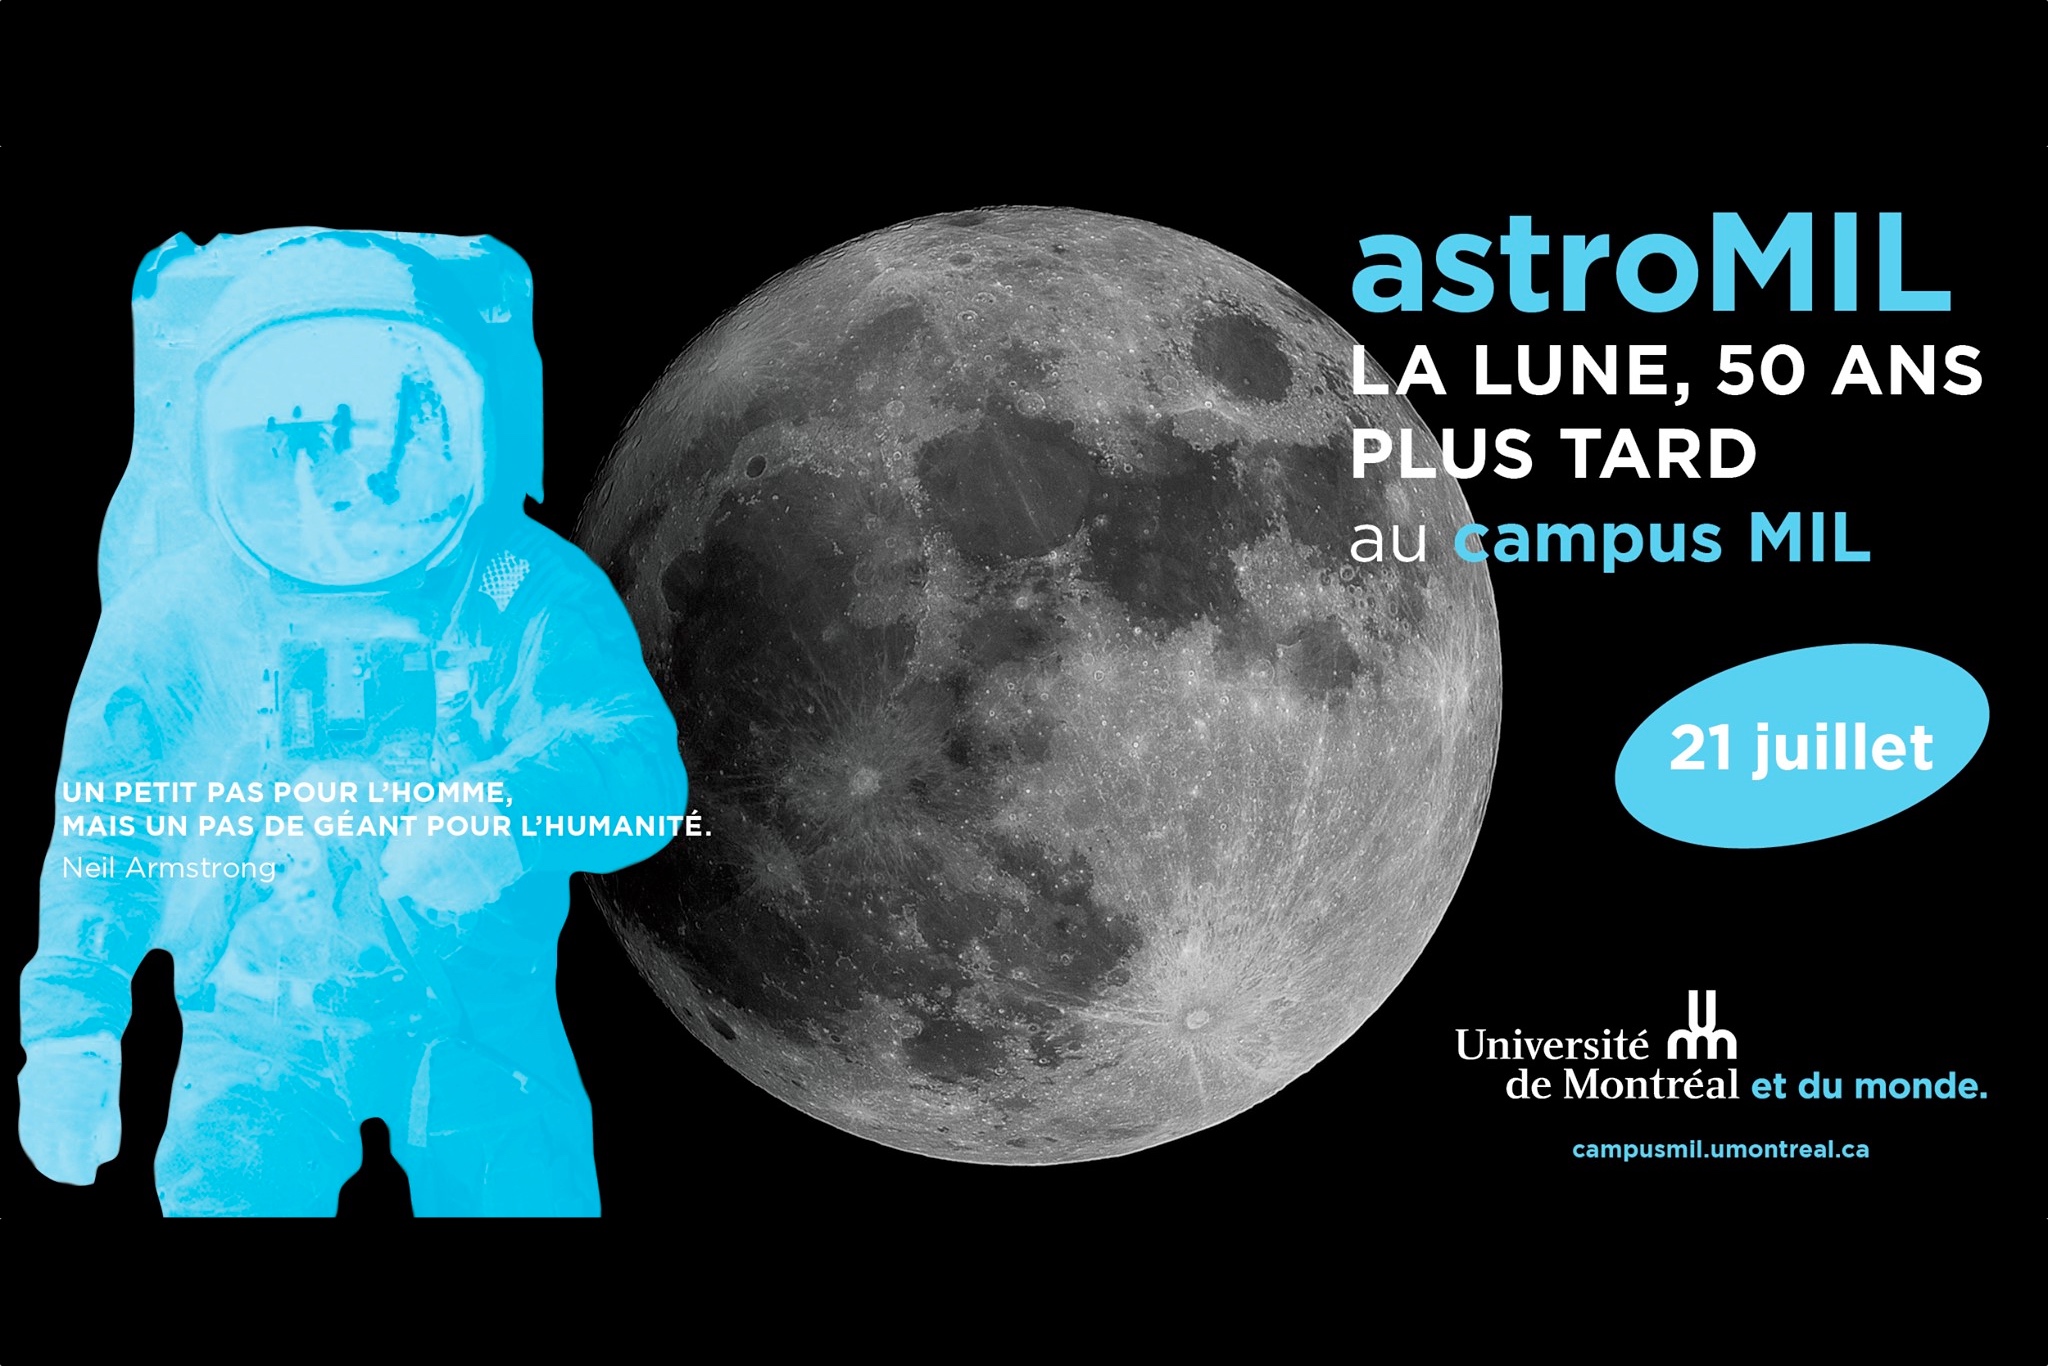 astroMIL 2019: la Lune, 50 ans plus tard